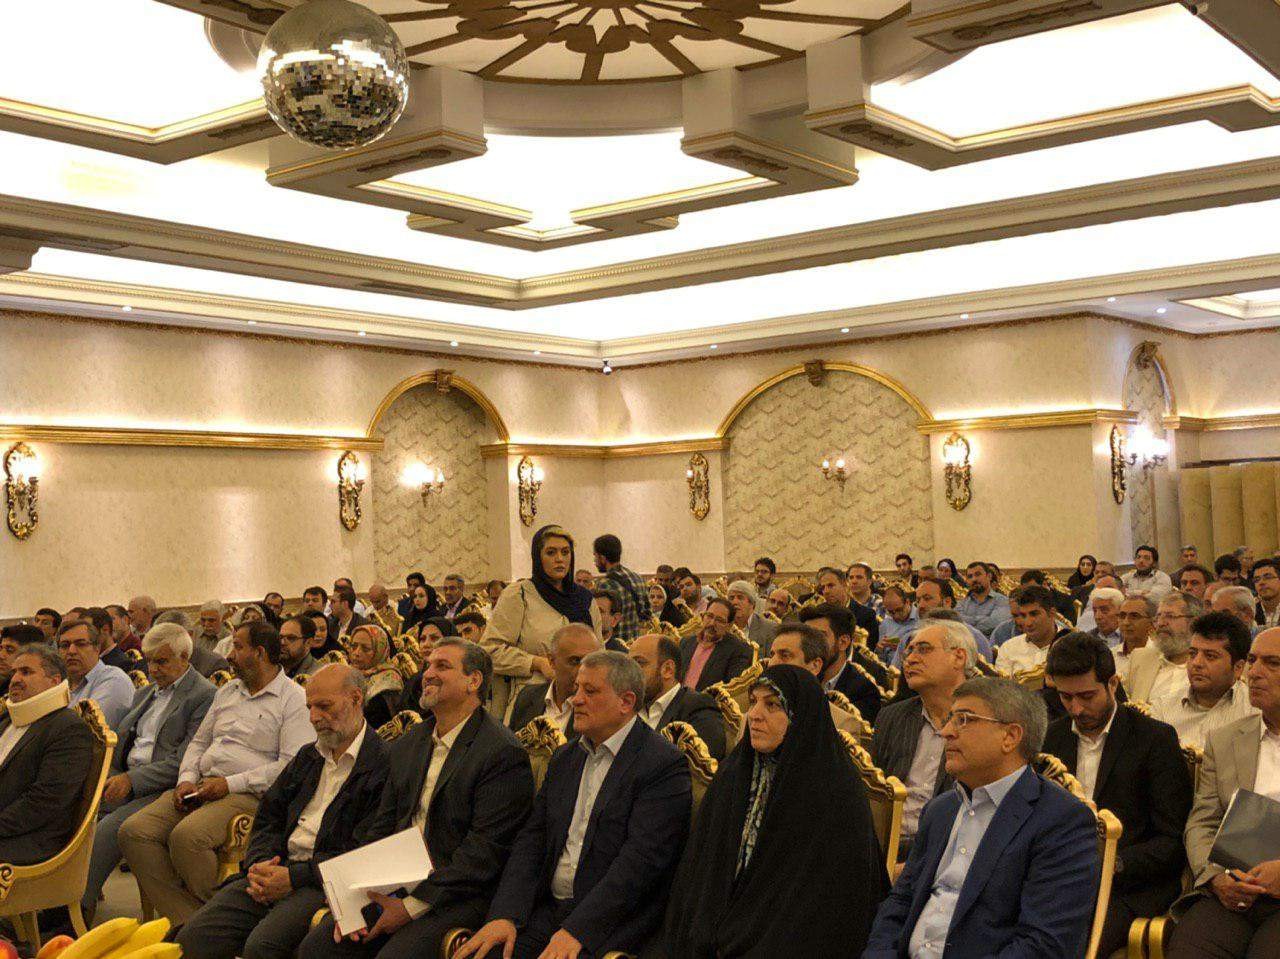 شورای شهر تهران باید به دیدگاههای شورایاران بیشتر توجه کند